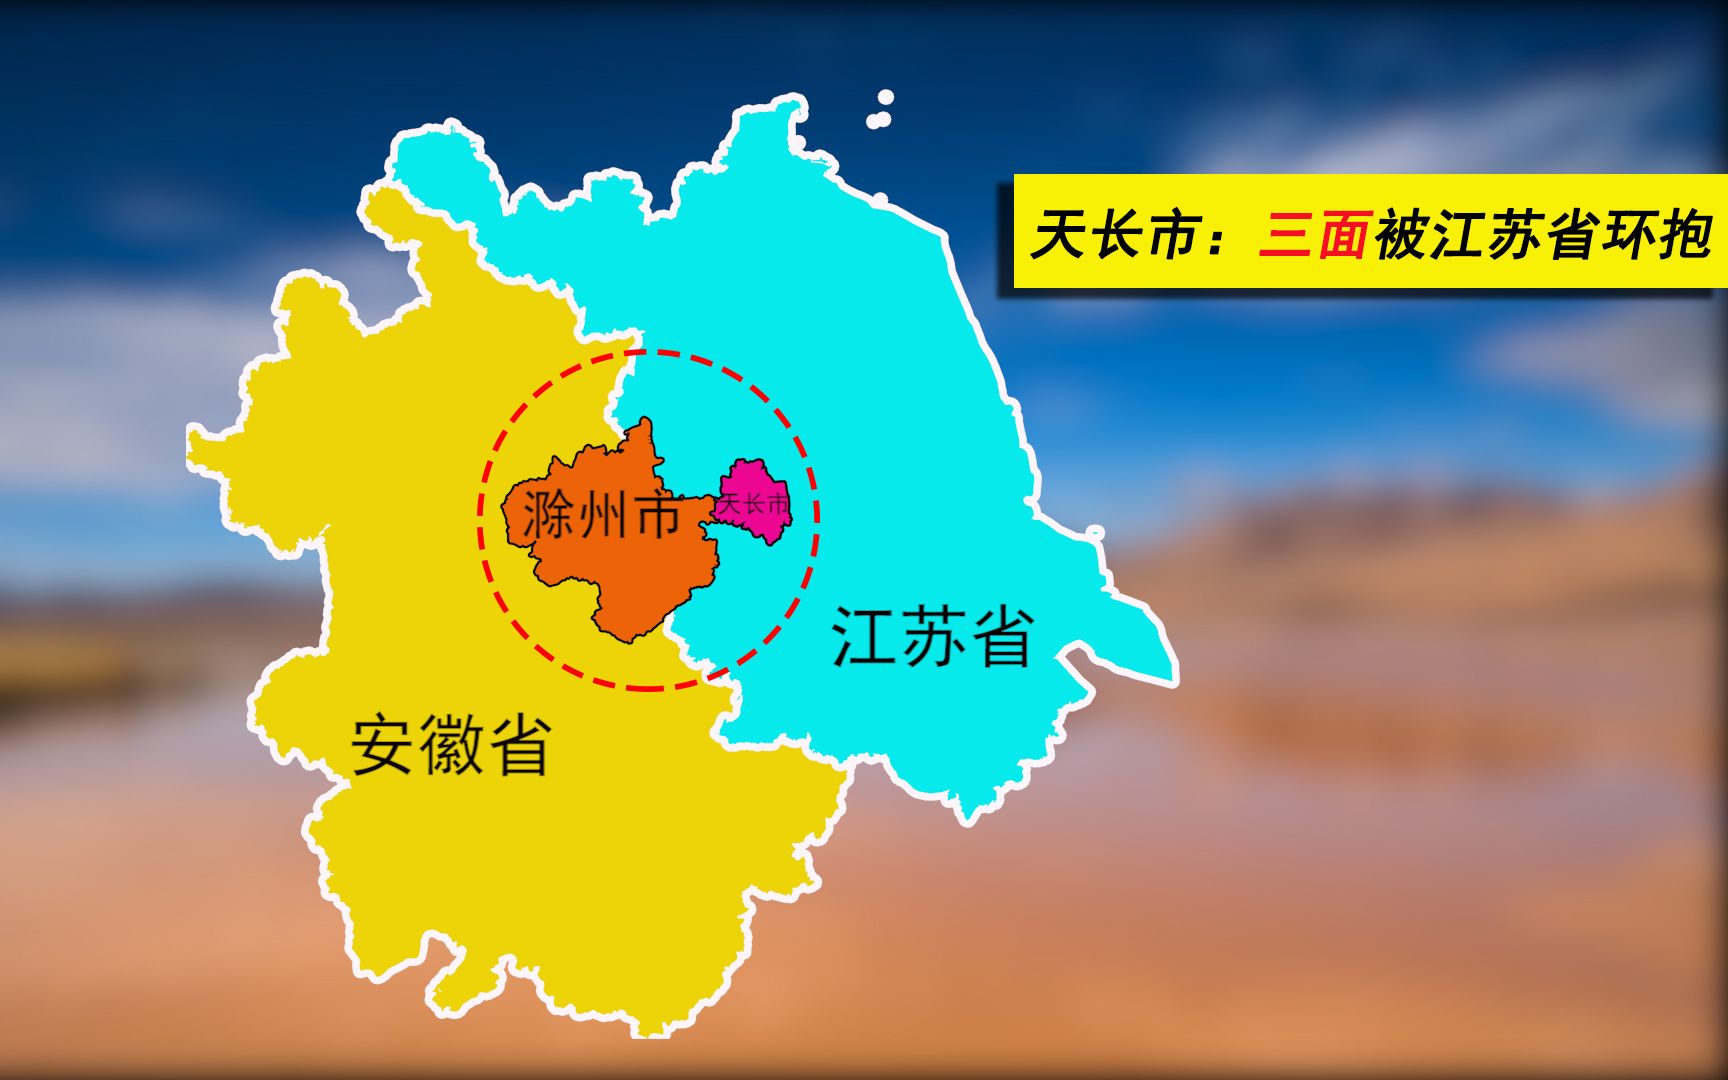 三面被包围的天长市接壤南京扬州淮安未来会划江苏吗